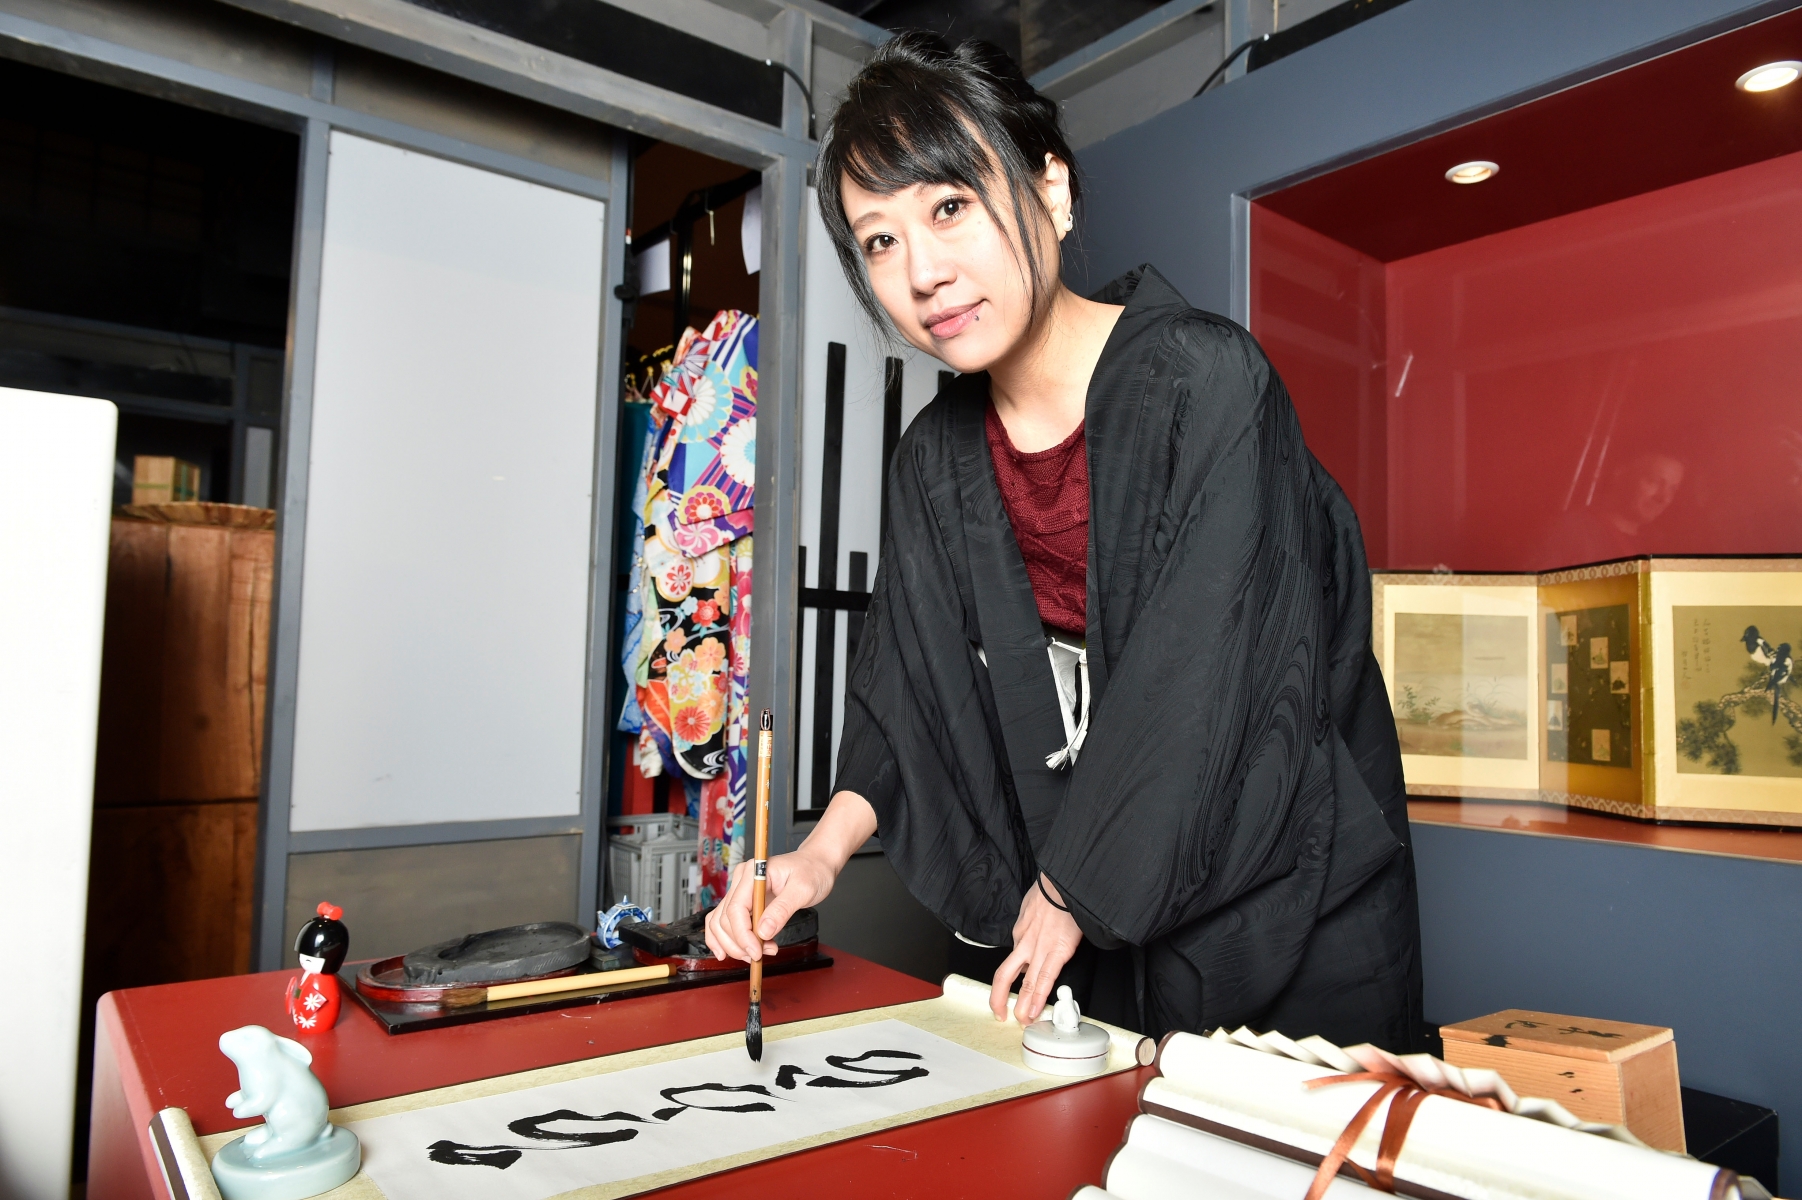 Martigny - 2 octobre 2016 - Annco Miura, artiste calligraphe japonnaise, à l'Expo du Japon de la Foire du Valais.  (Le Nouvelliste/ Héloïse MARET)